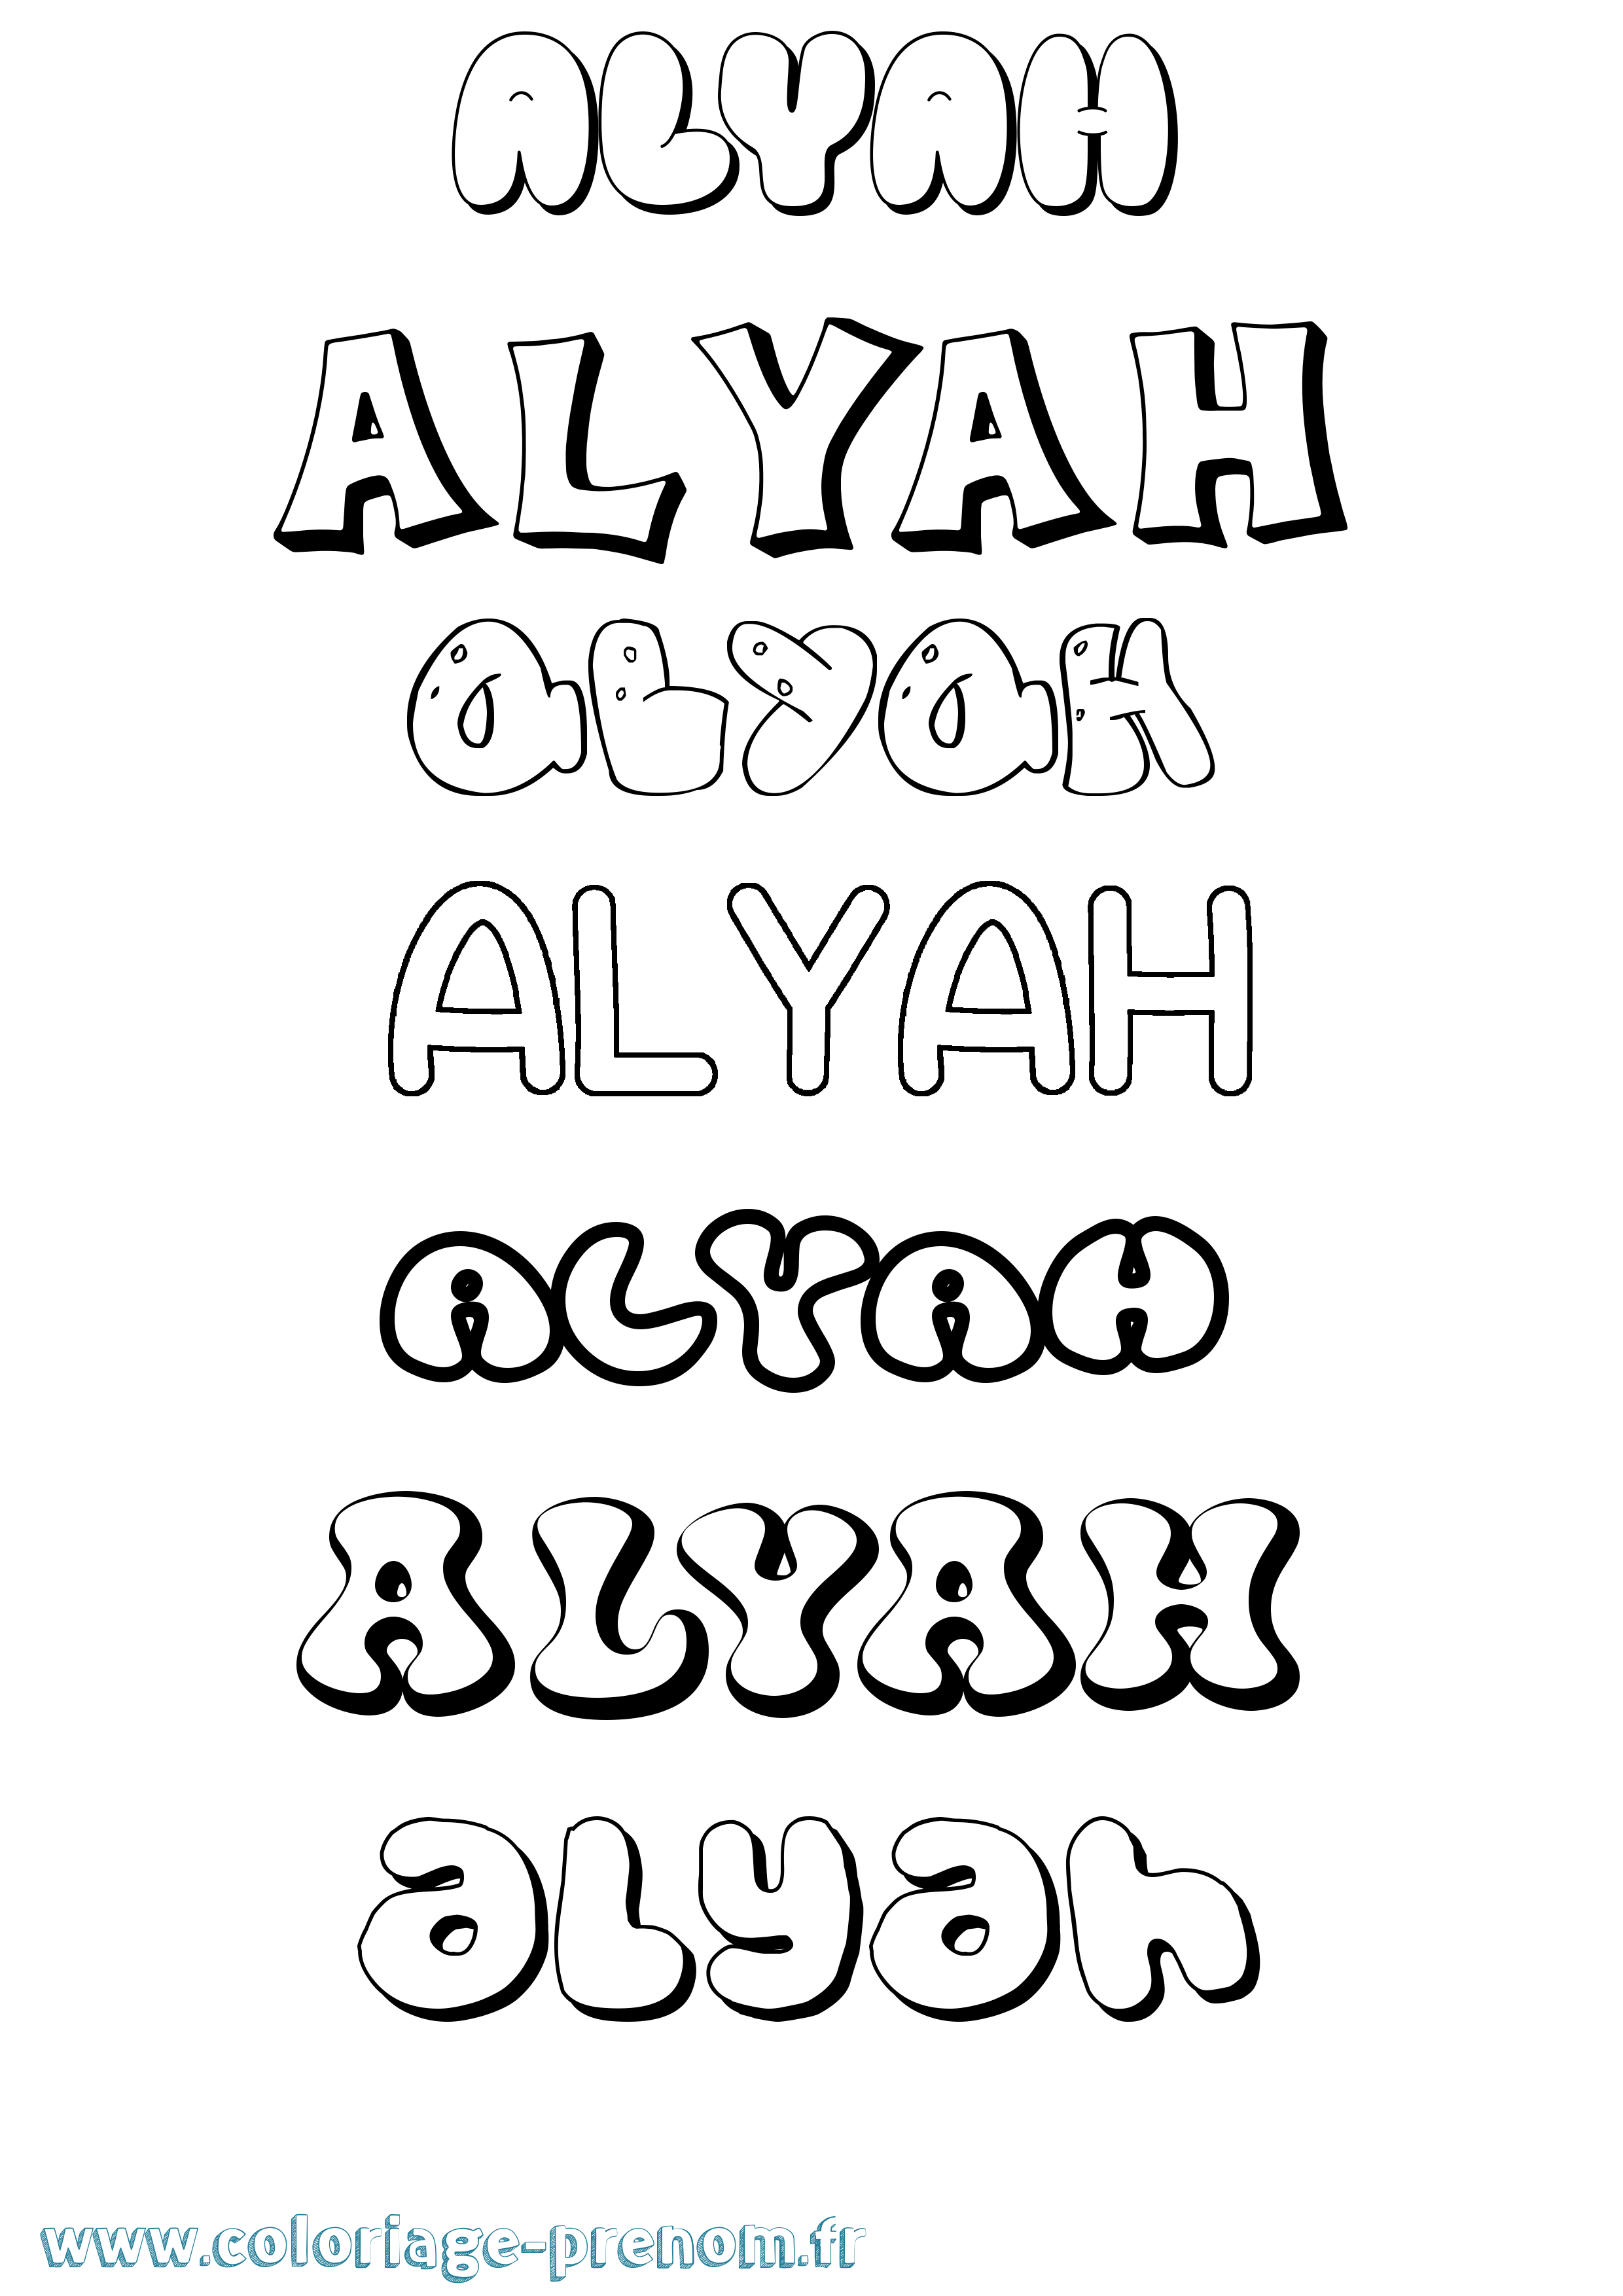 Coloriage prénom Alyah Bubble